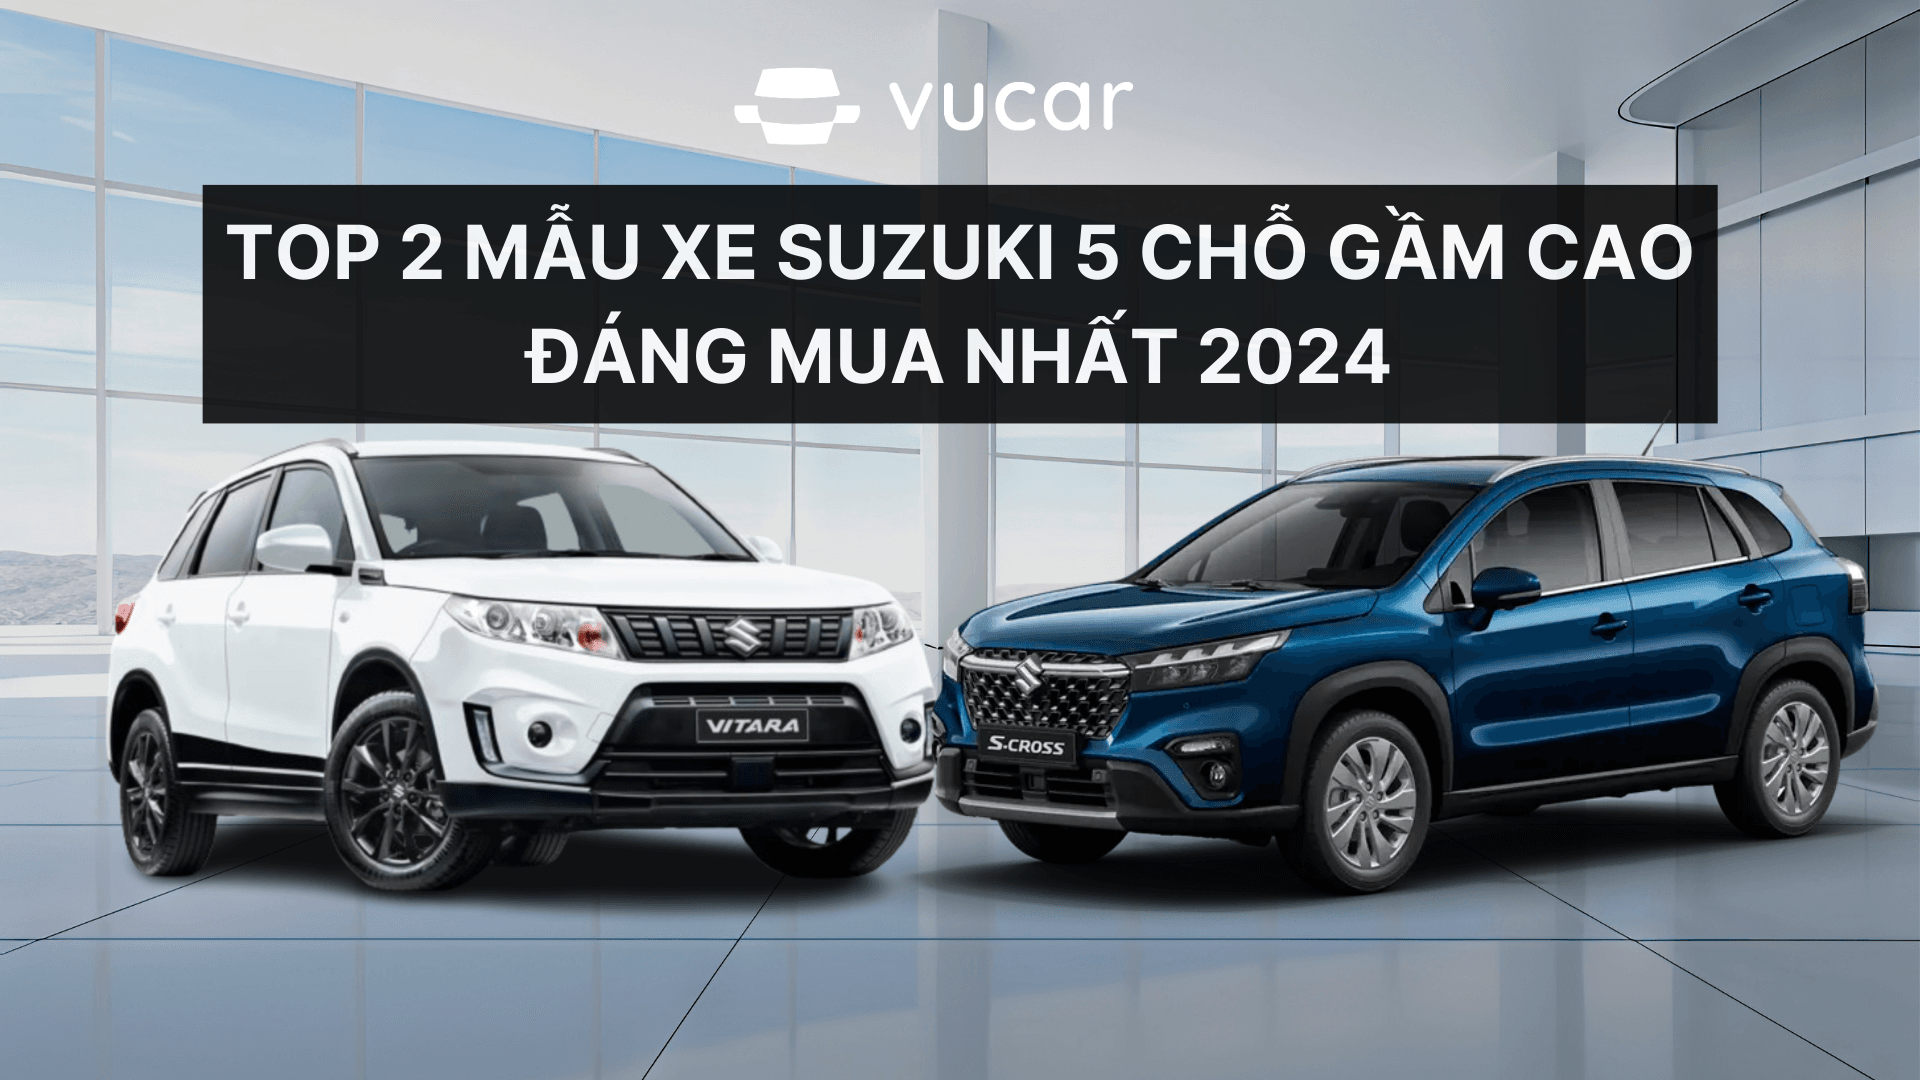 Top 2 mẫu xe Suzuki 5 chỗ gầm cao đáng mua nhất 2024